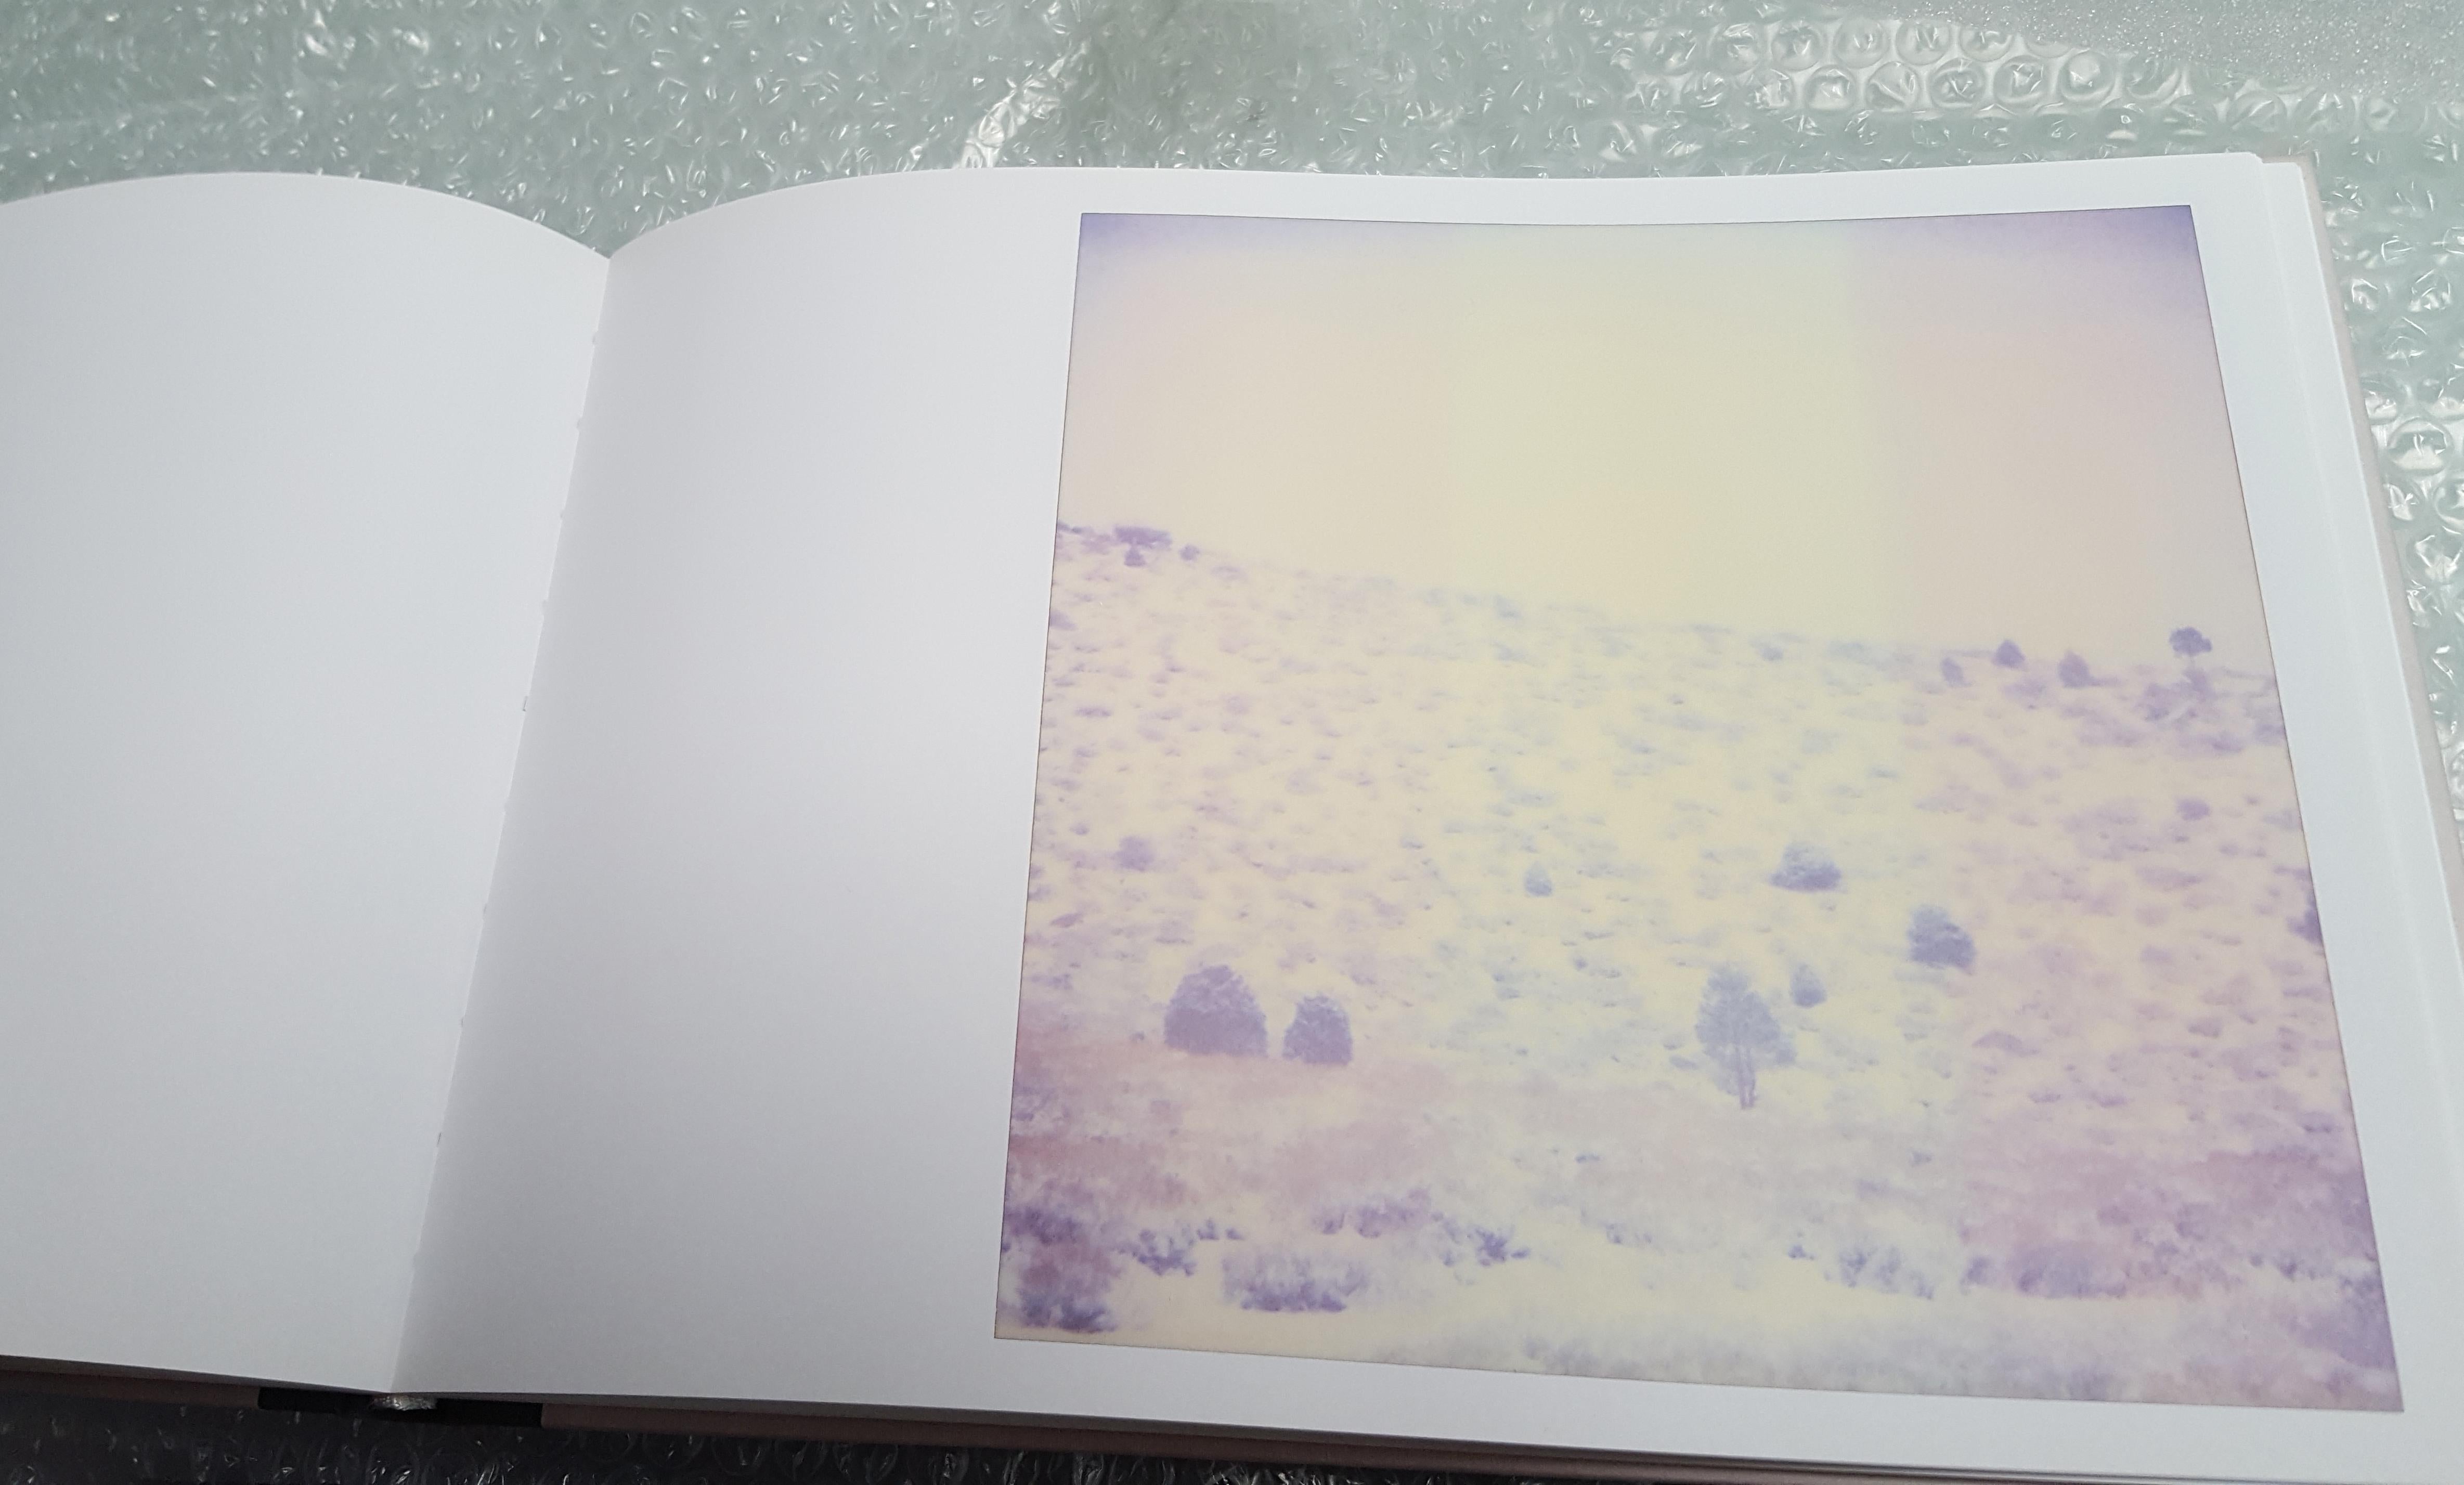 Violettes Tal (Einöde) - 2003

57x56cm, 
Auflage 3/5. 
Analoger C-Print, von der Künstlerin handgedruckt auf Fuji Crystal Archive Papier, basierend auf der Polaroid. 
Montiert auf Aluminium mit mattem UV-Schutz. 
Künstlerinventar Nummer 645.01.